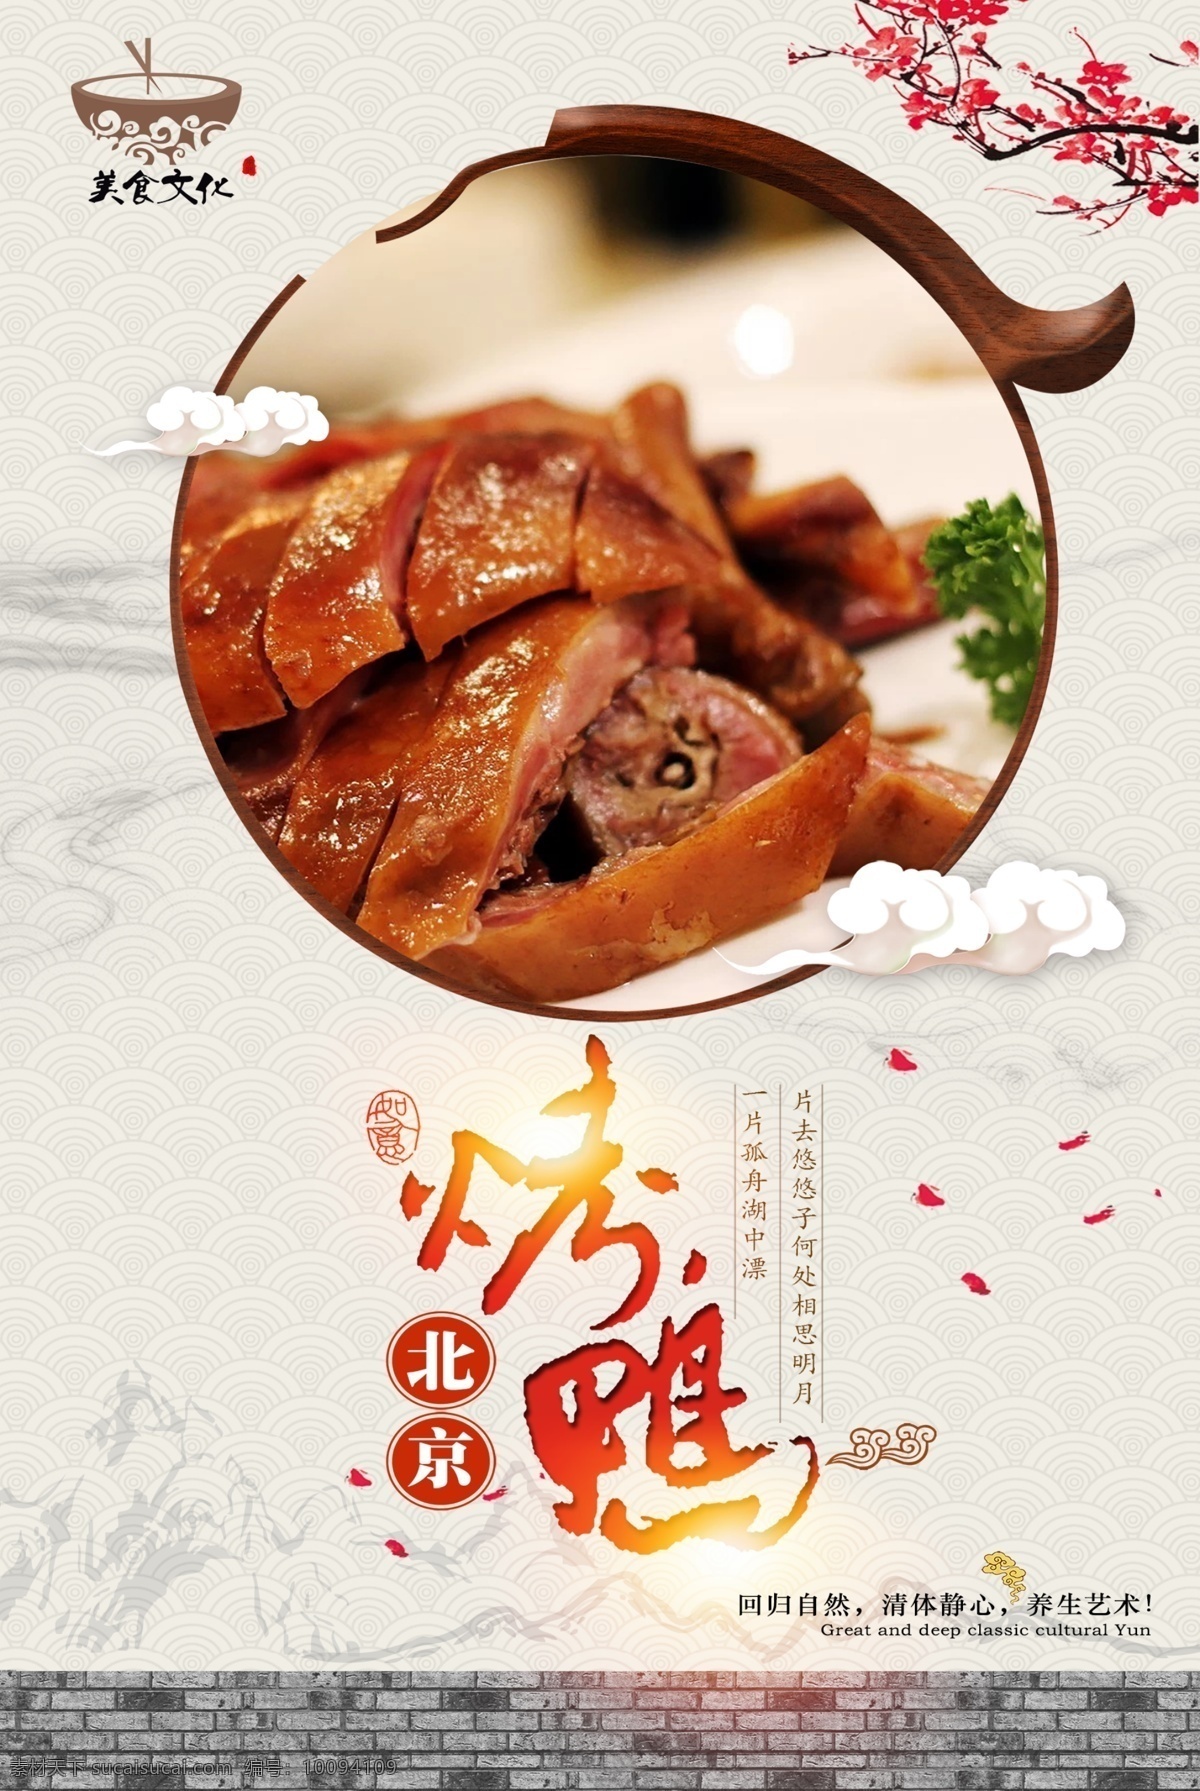 简约 中国 风 烤鸭 美食 海报 中国风 烤鸭海报 美食海报 北京烤鸭 美食文化 中国传统美食